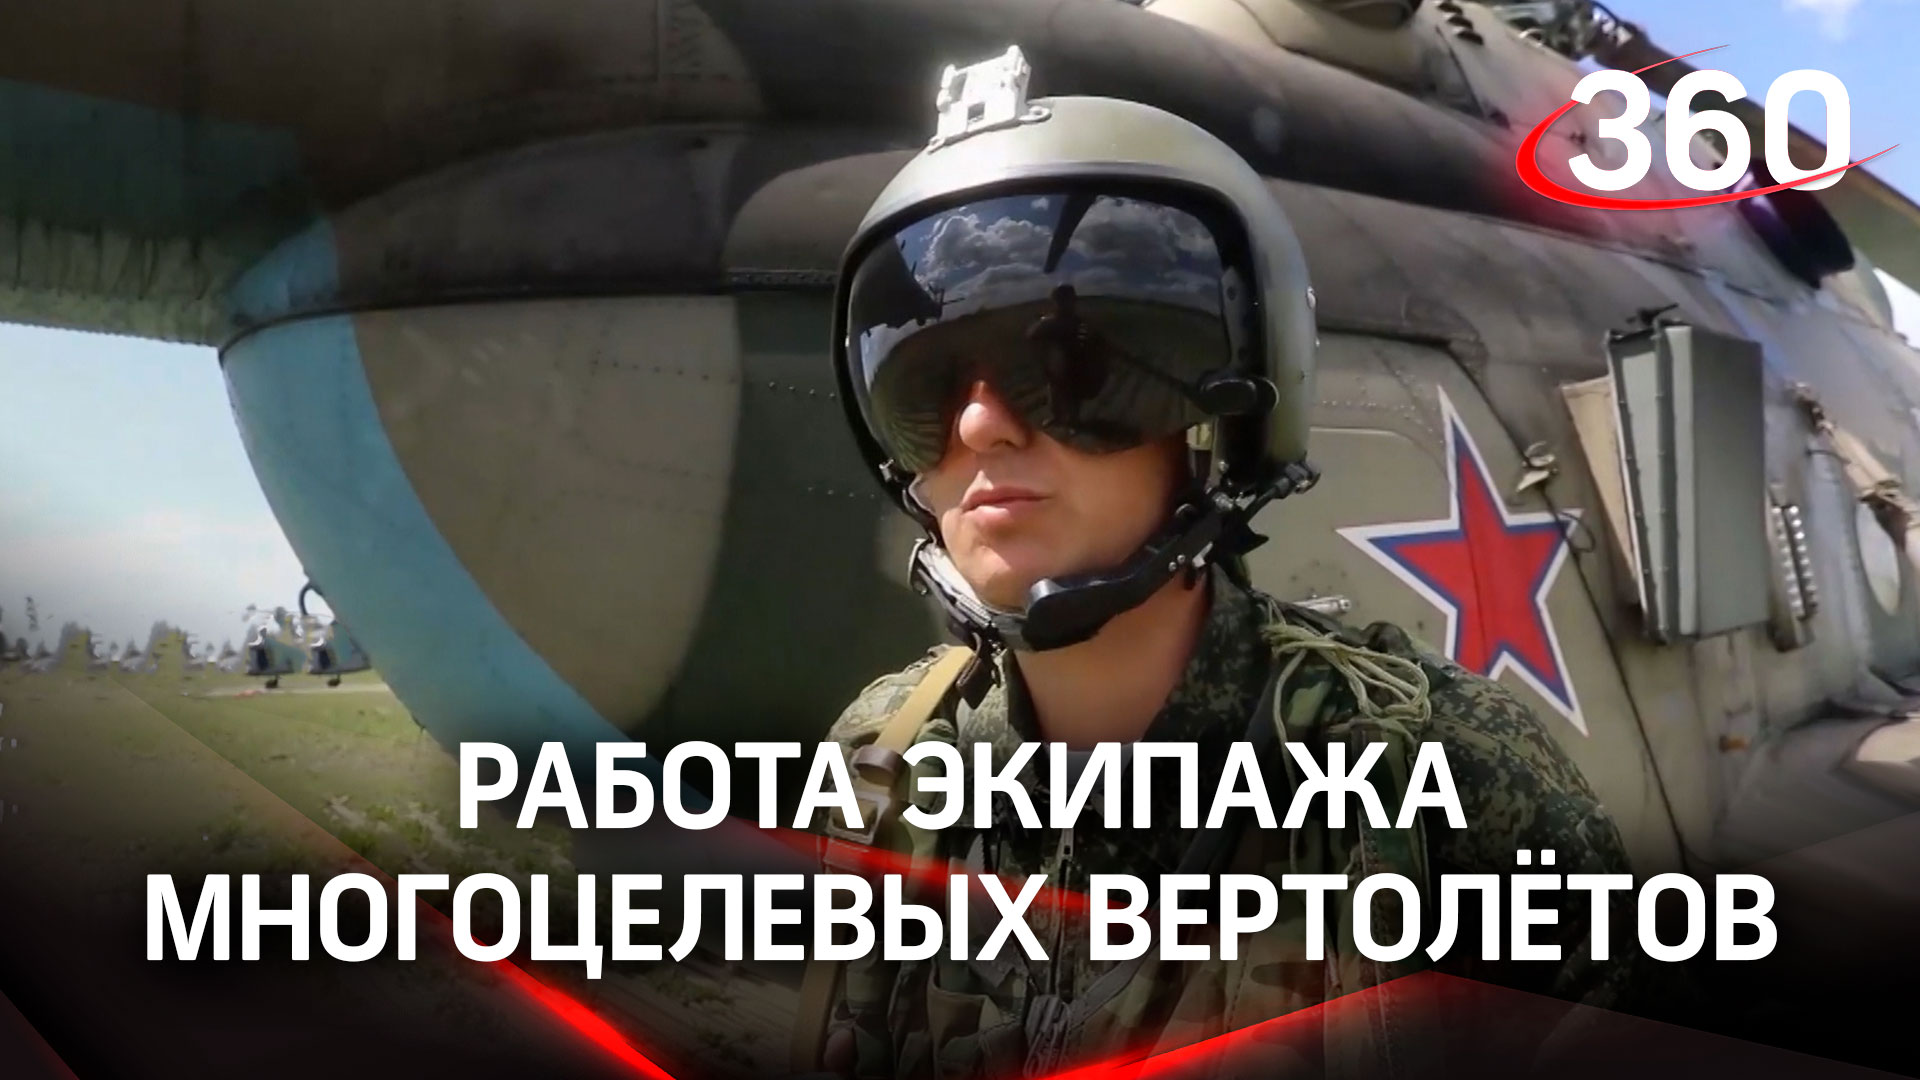 Постановщики помех: российские вертолёты прикрыли авиацию от украинских средств ПВО